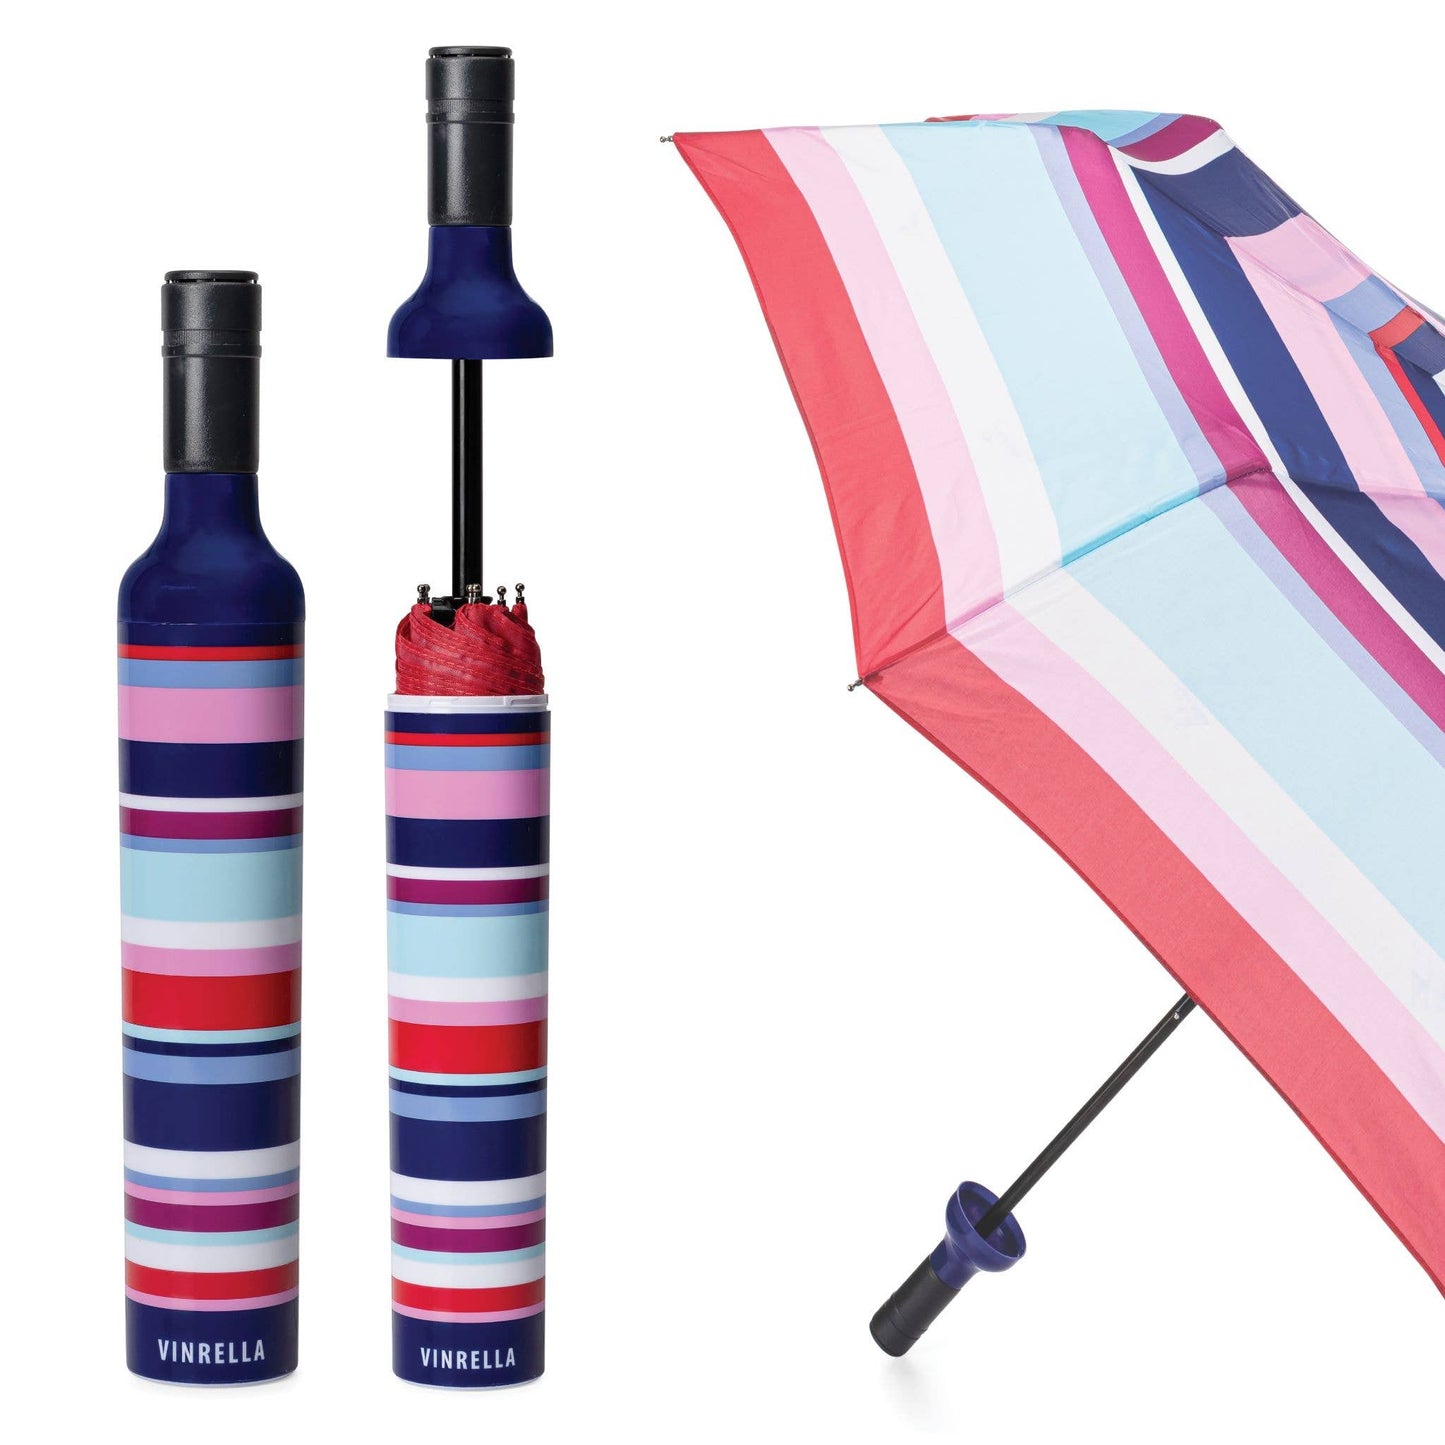 Vinrella - Kaido Bottle Umbrella